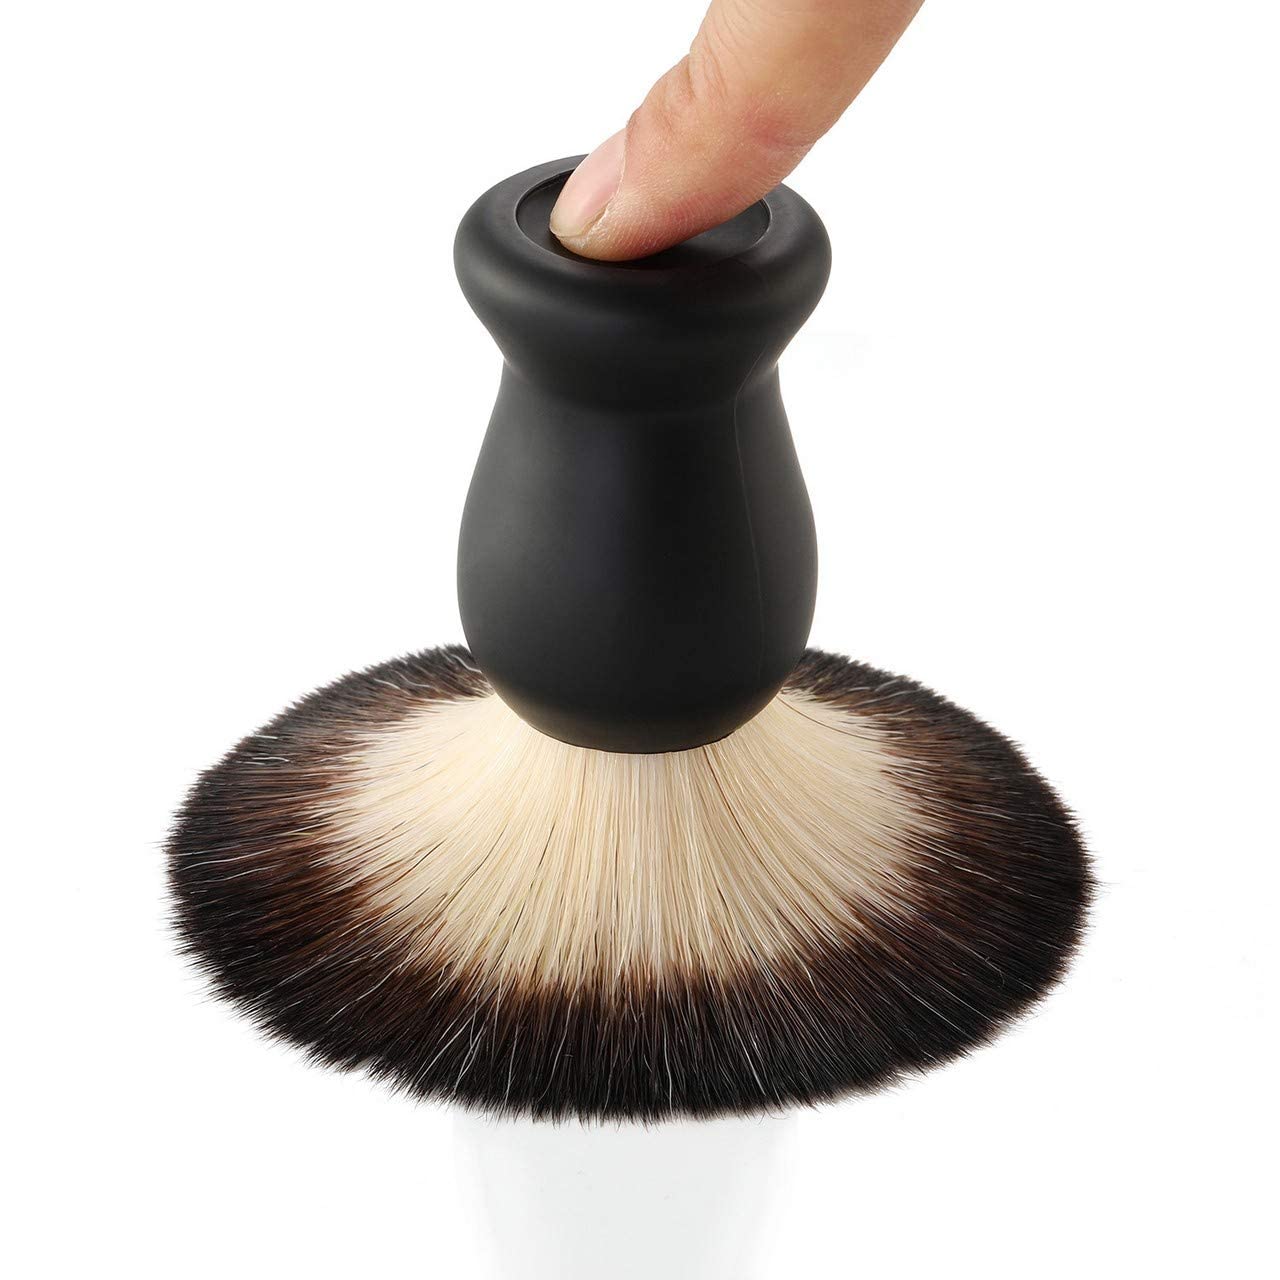 Aethland Shaving Brush Set with Black Solid Wood Handle, Shaving Kit for Men Includes Shaving Brush, Dia 3.1 inches Stainless Steel Shaving Bowl & Shaving Stand Wet Shaving Gifts for Men